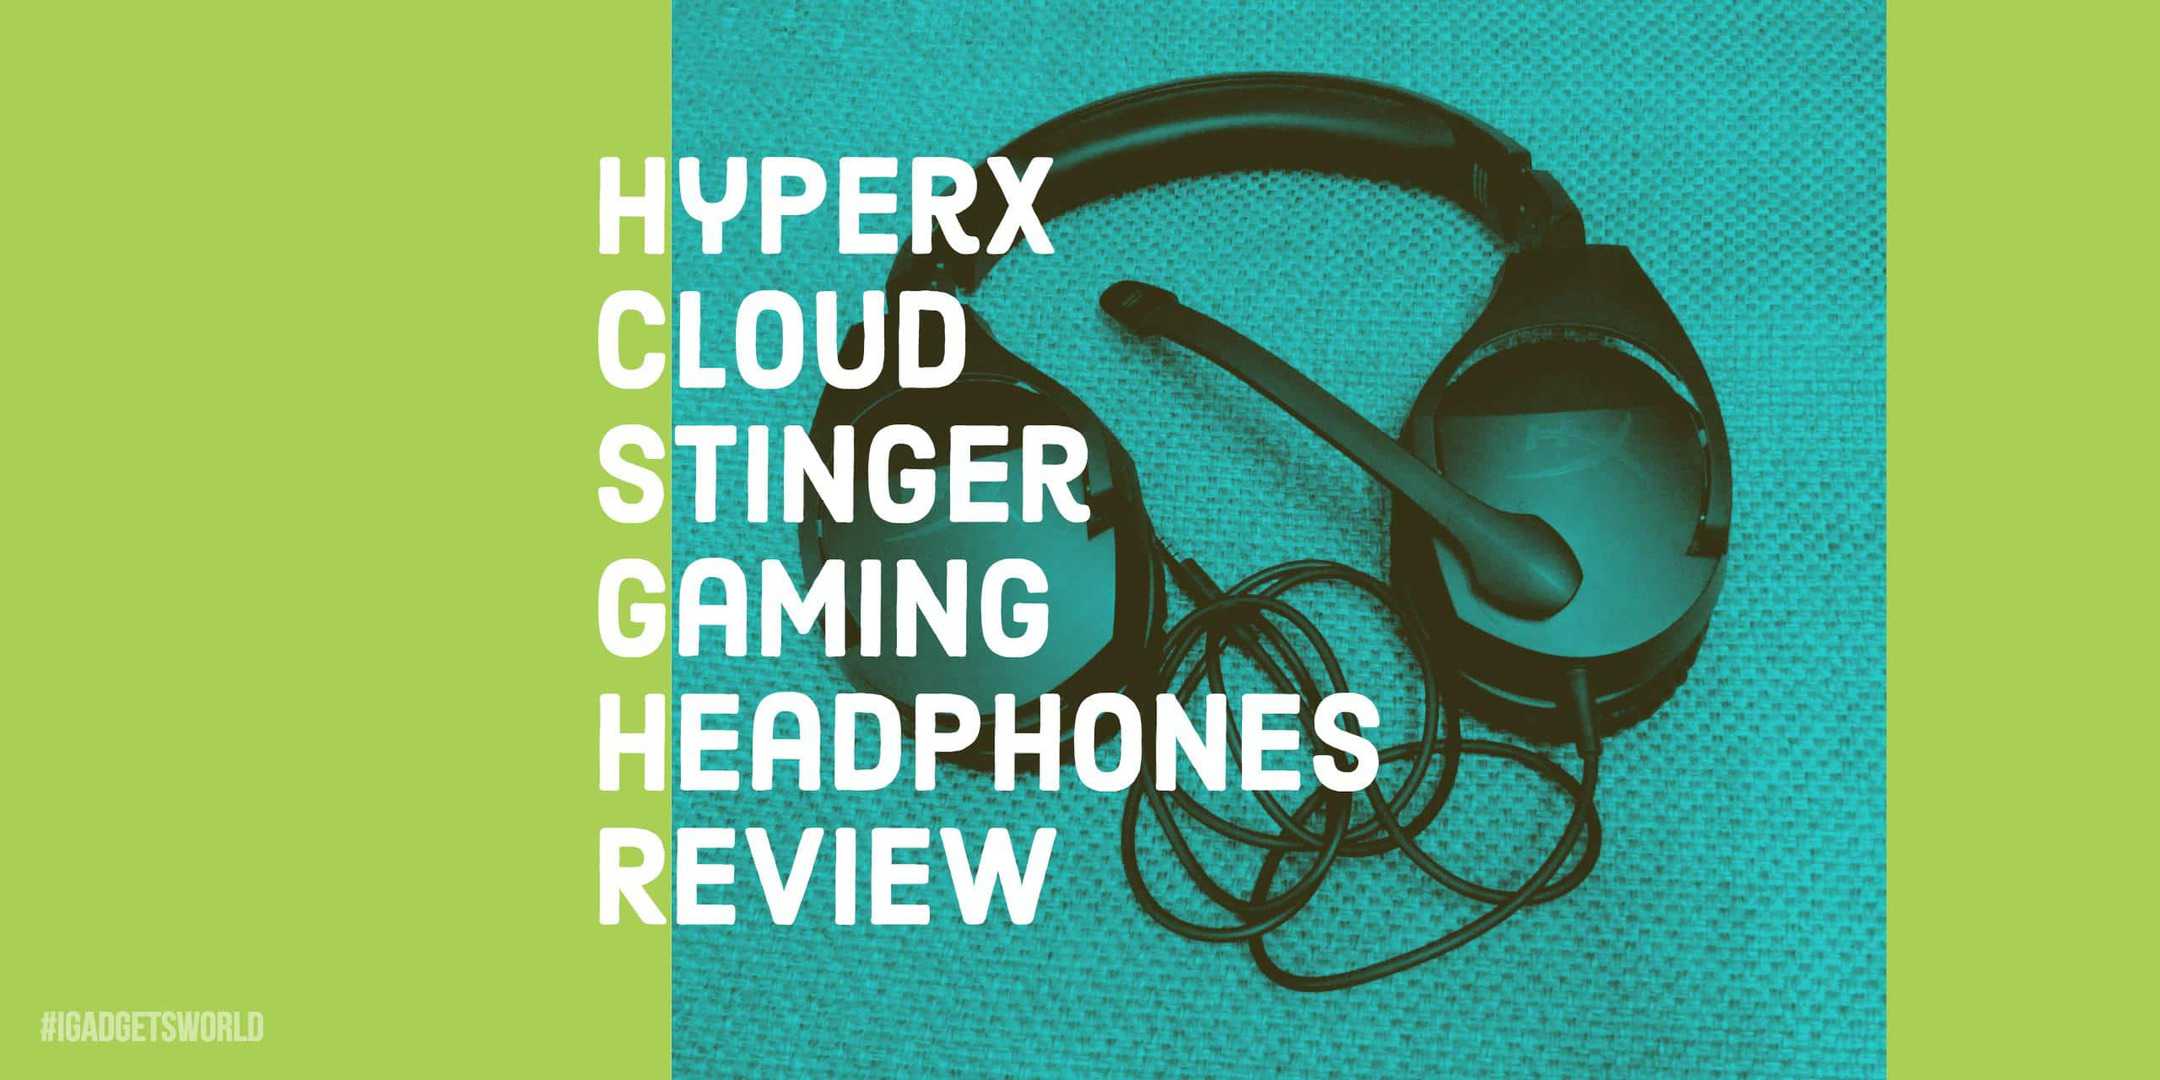 HyperX Cloud Stinger Gaming Headphones Review - 5